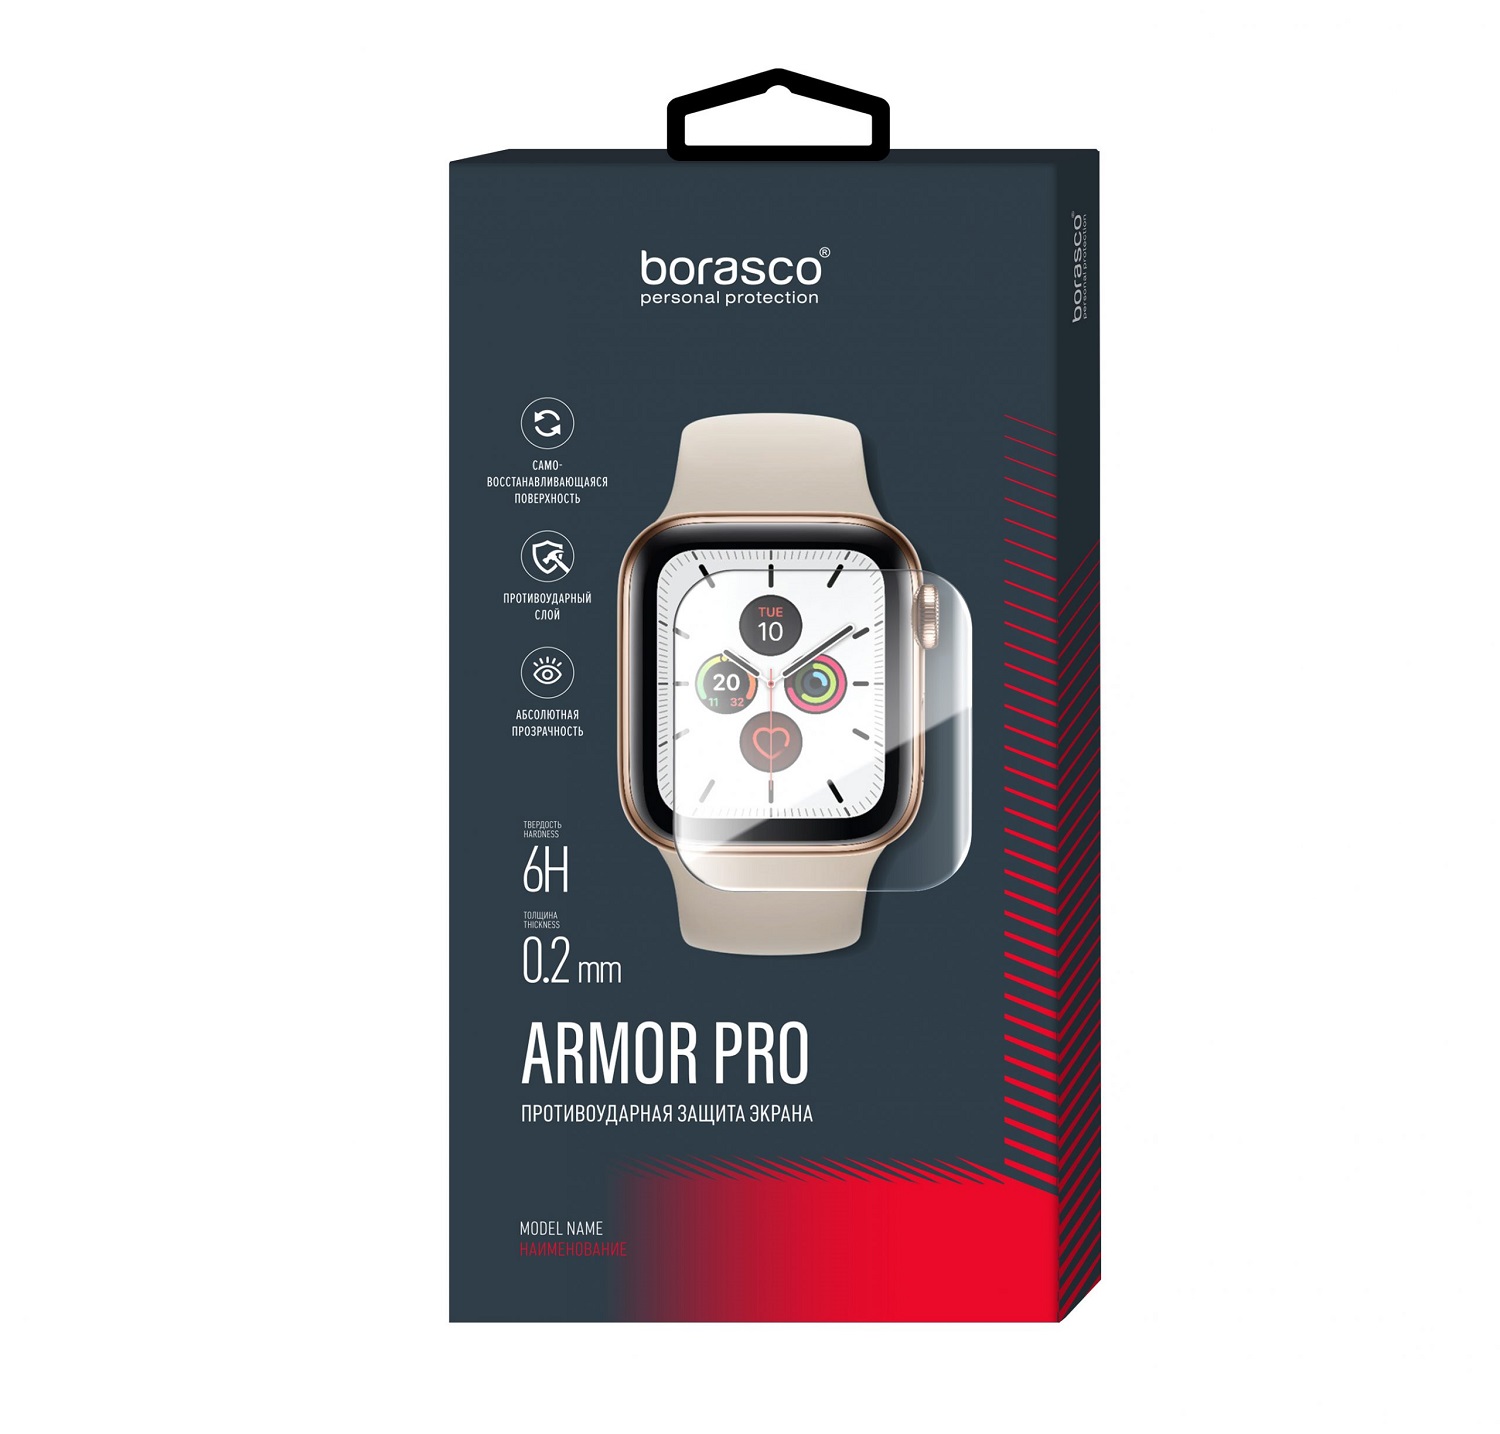 Защита экрана BoraSCO Armor Pro для Honor Band 2 защита экрана borasco armor pro для honor watch se